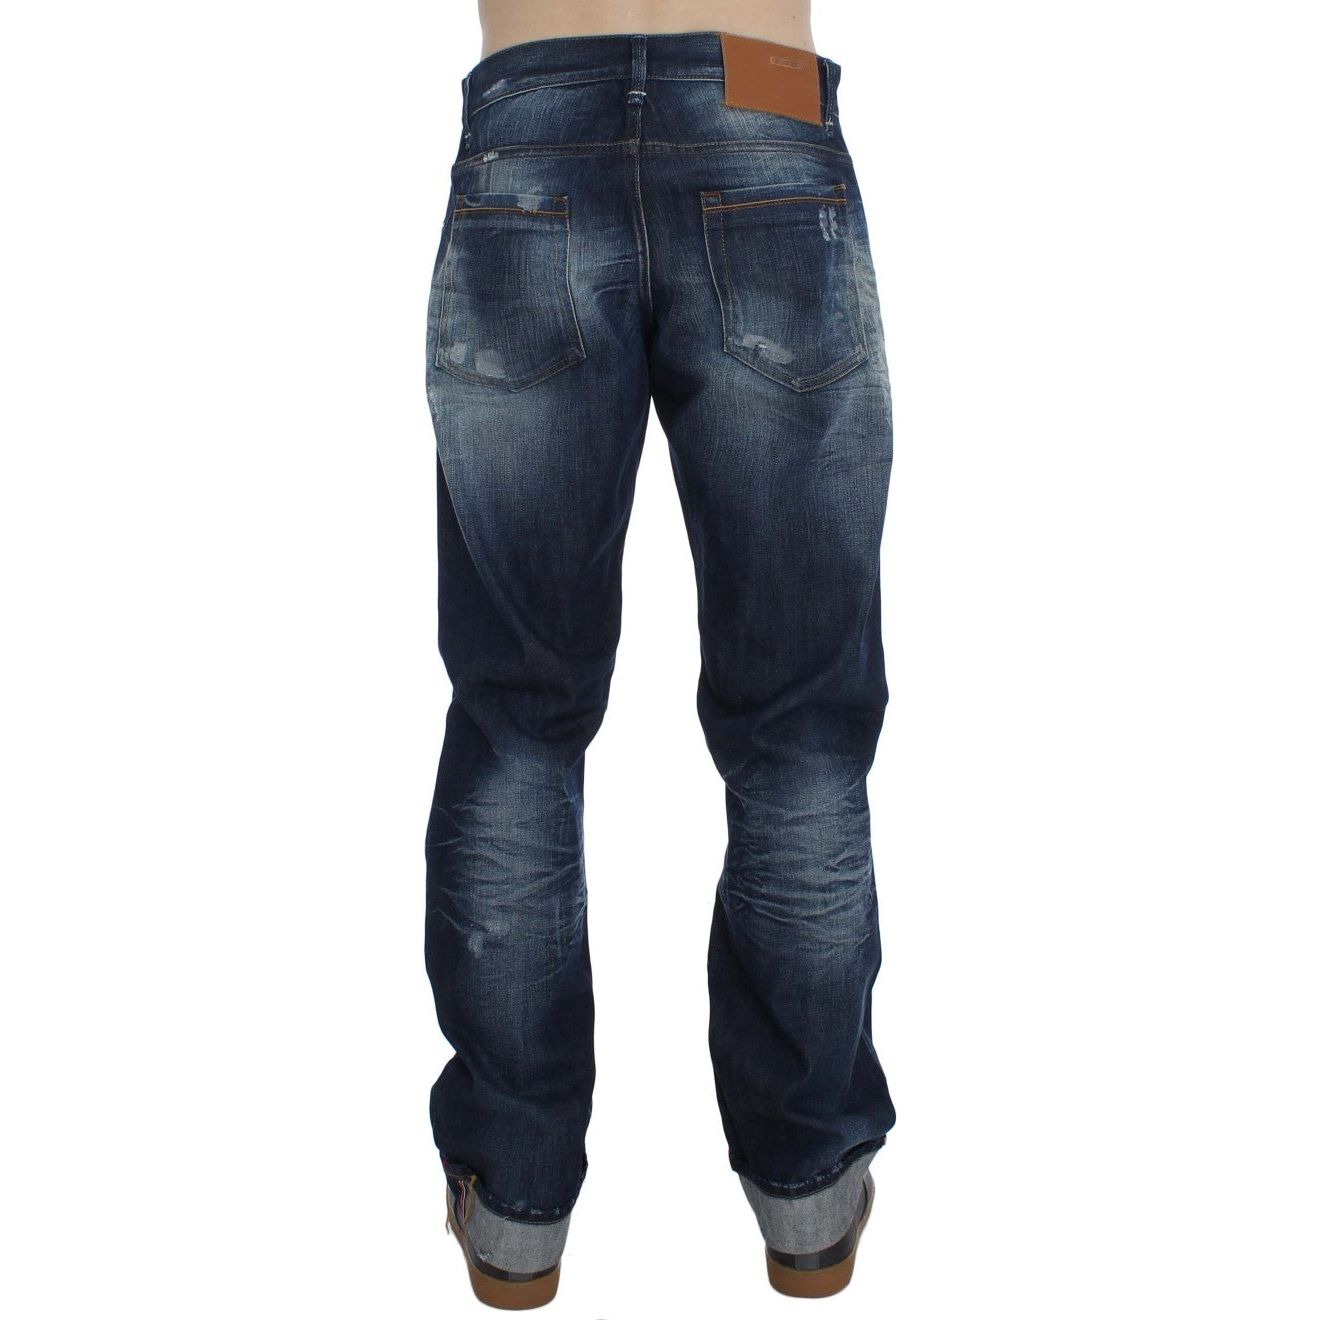 Acht Authentic Regular Fit Blue Wash Jeans blue-wash-cotton-denim-regular-fit-jeans-2 292687-blue-wash-cotton-denim-regular-fit-jeans-4-3.jpg